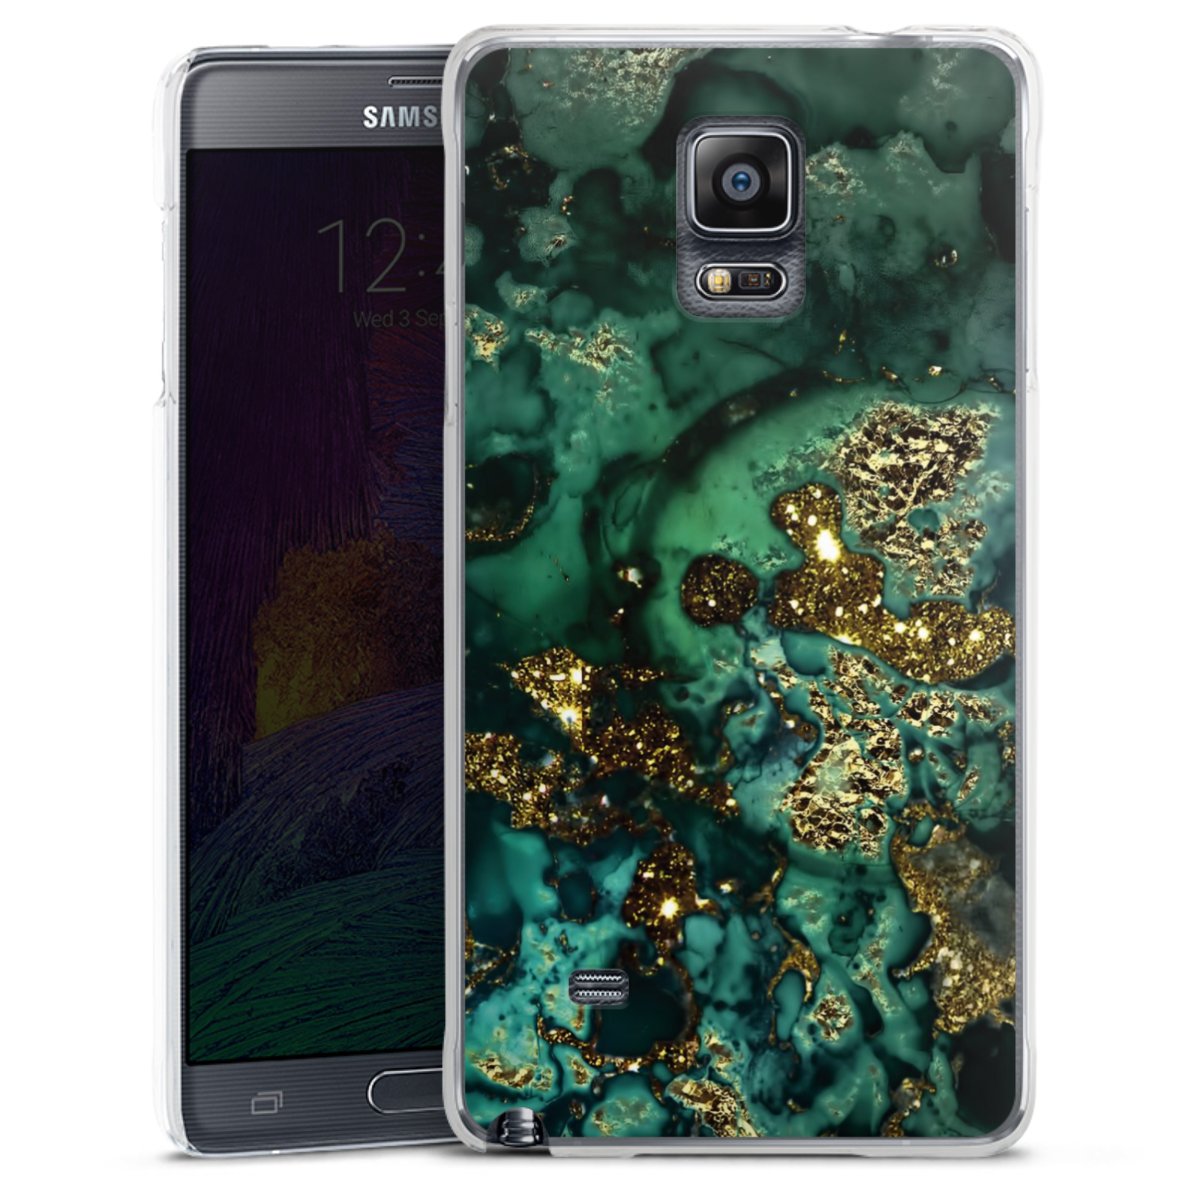 Schrikken Kracht speer Cyan Glitter Marble Look voor Hardcase hoesje (transparant) voor Samsung  Galaxy Note 4 van DeinDesign